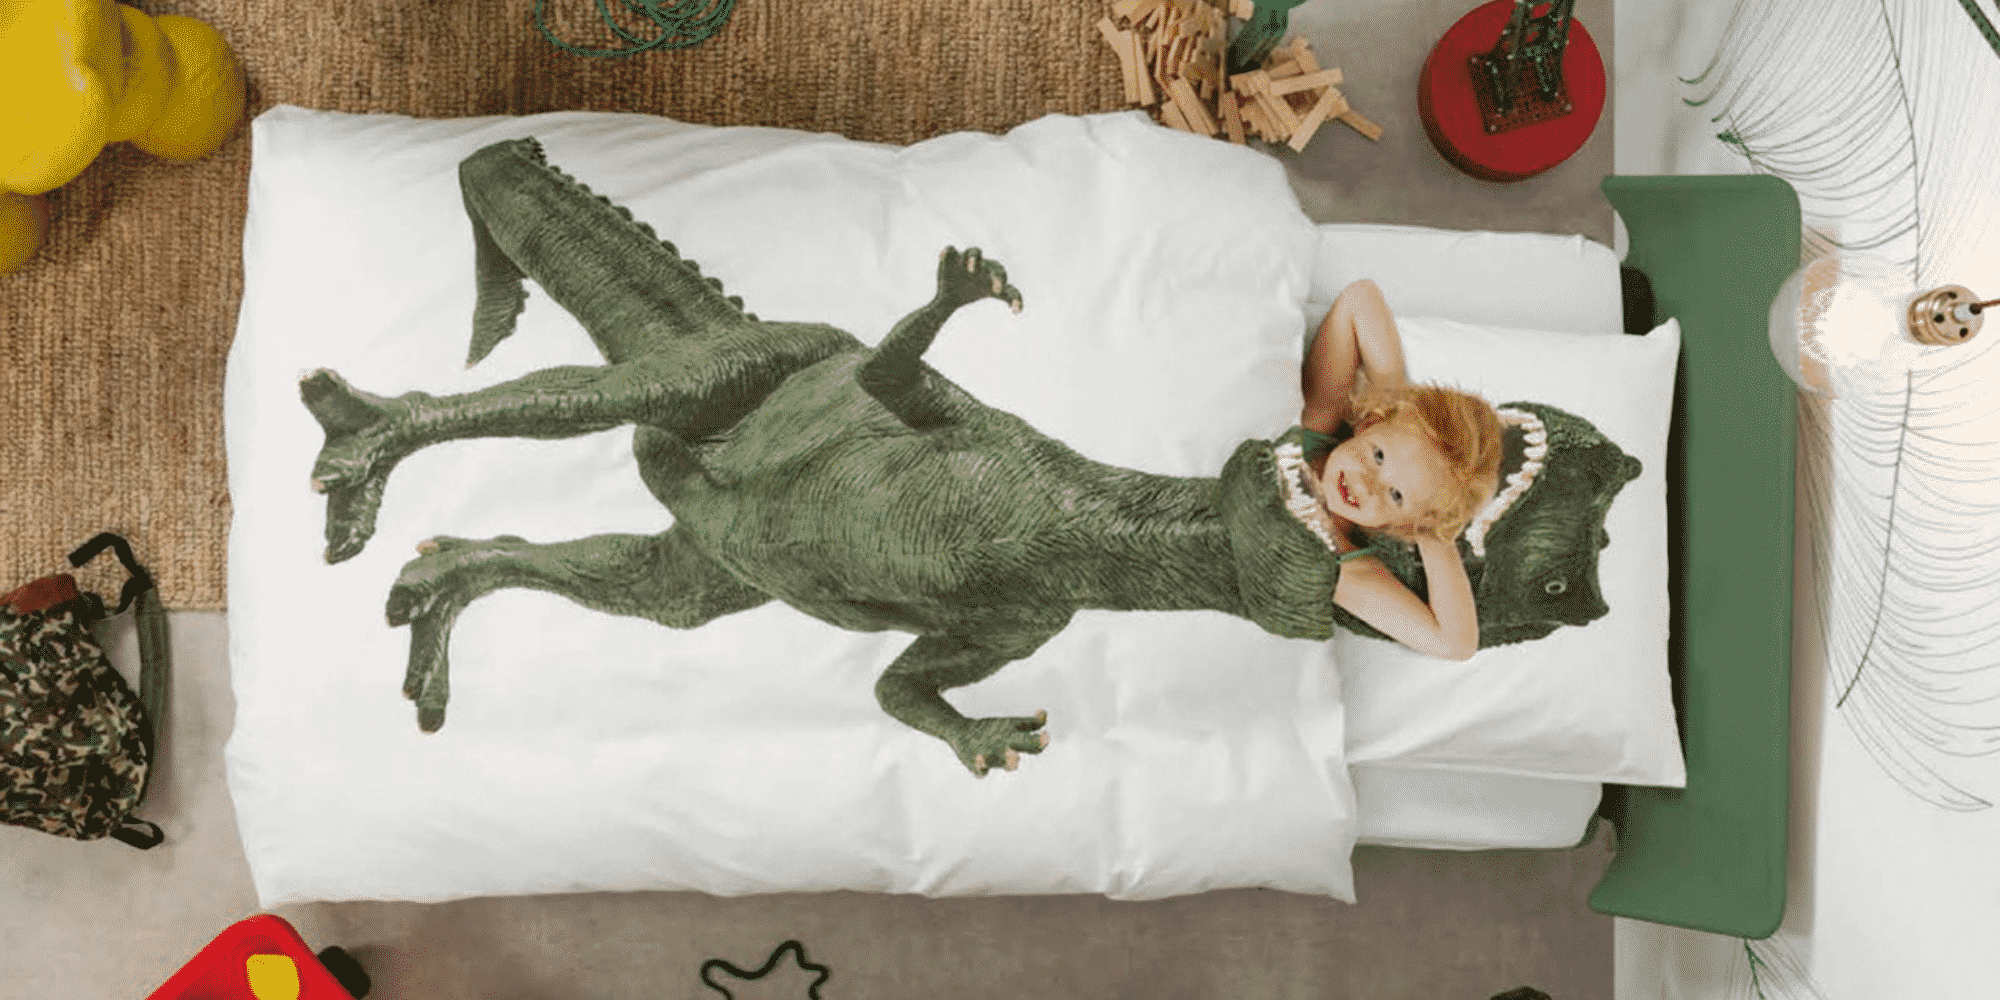 dinosaur-themed-bedroom-ideas